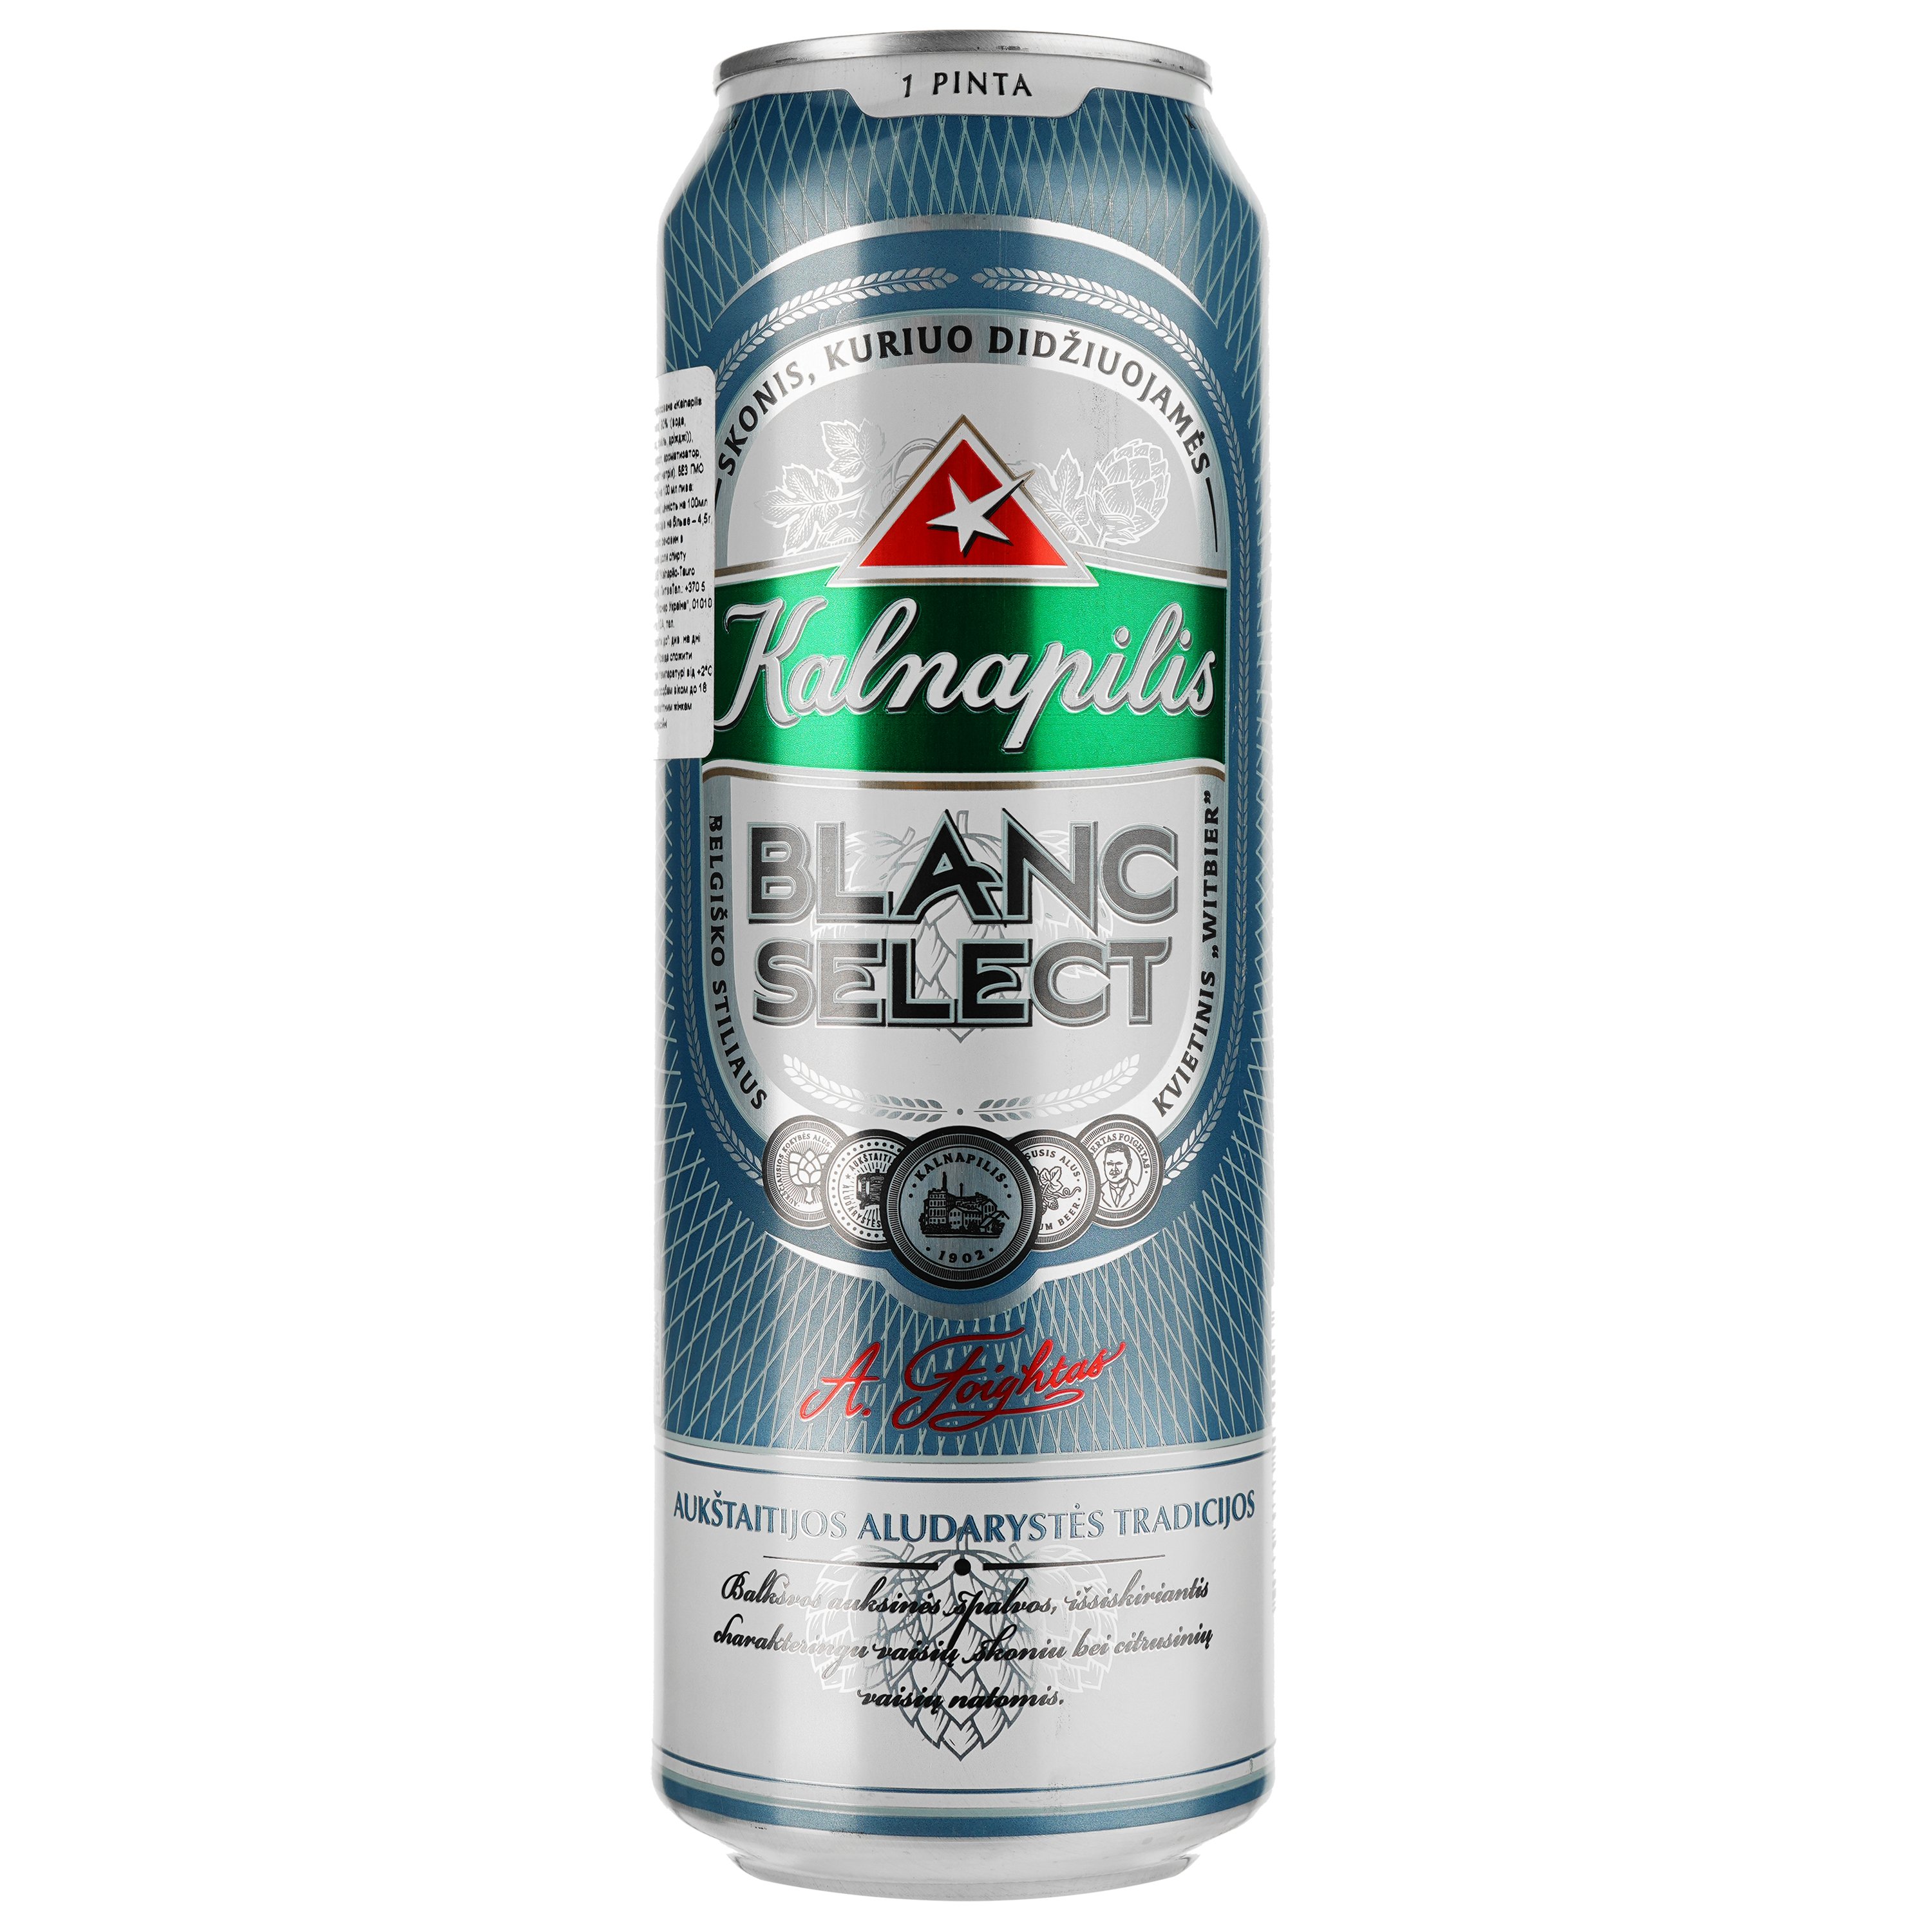 Пиво Kalnapilis Blanc Select світле 5% 0.568 л з/б - фото 1